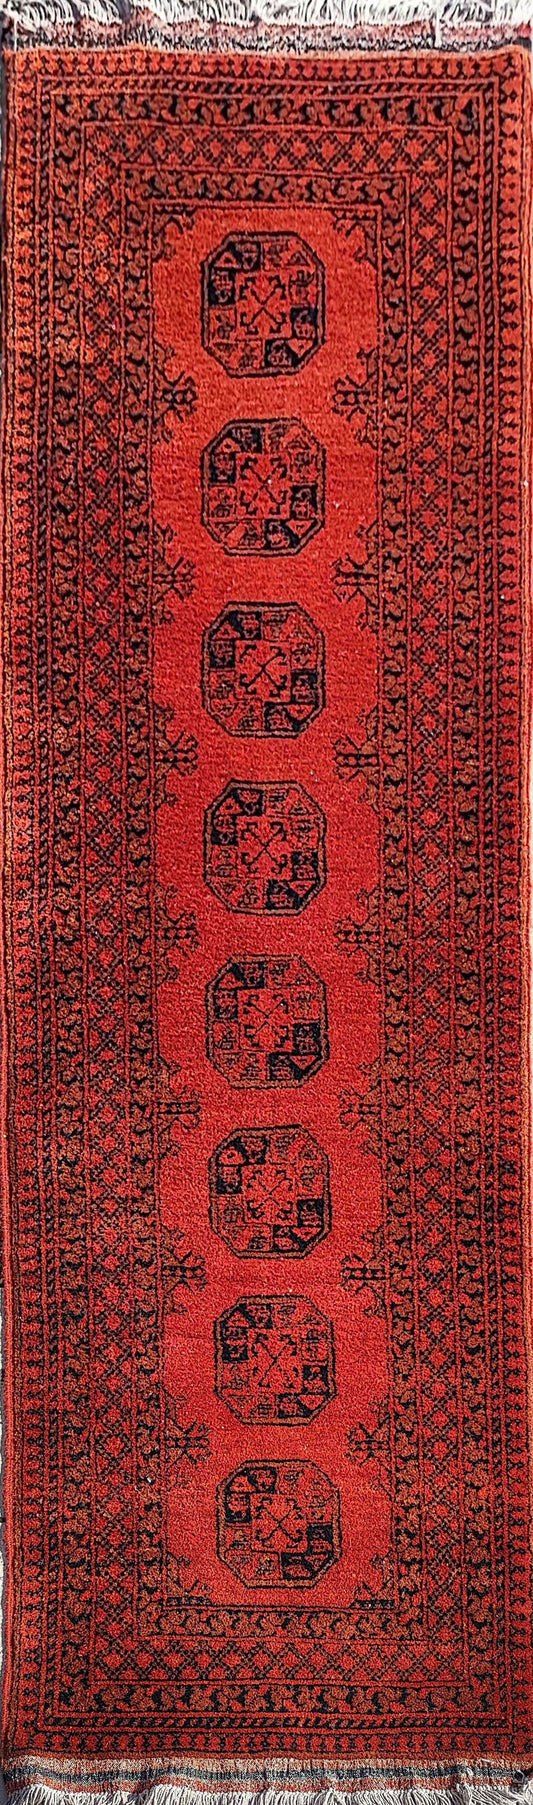 300 x 80 cm Golden Red Afghan Tribal Red Rug - Rugmaster